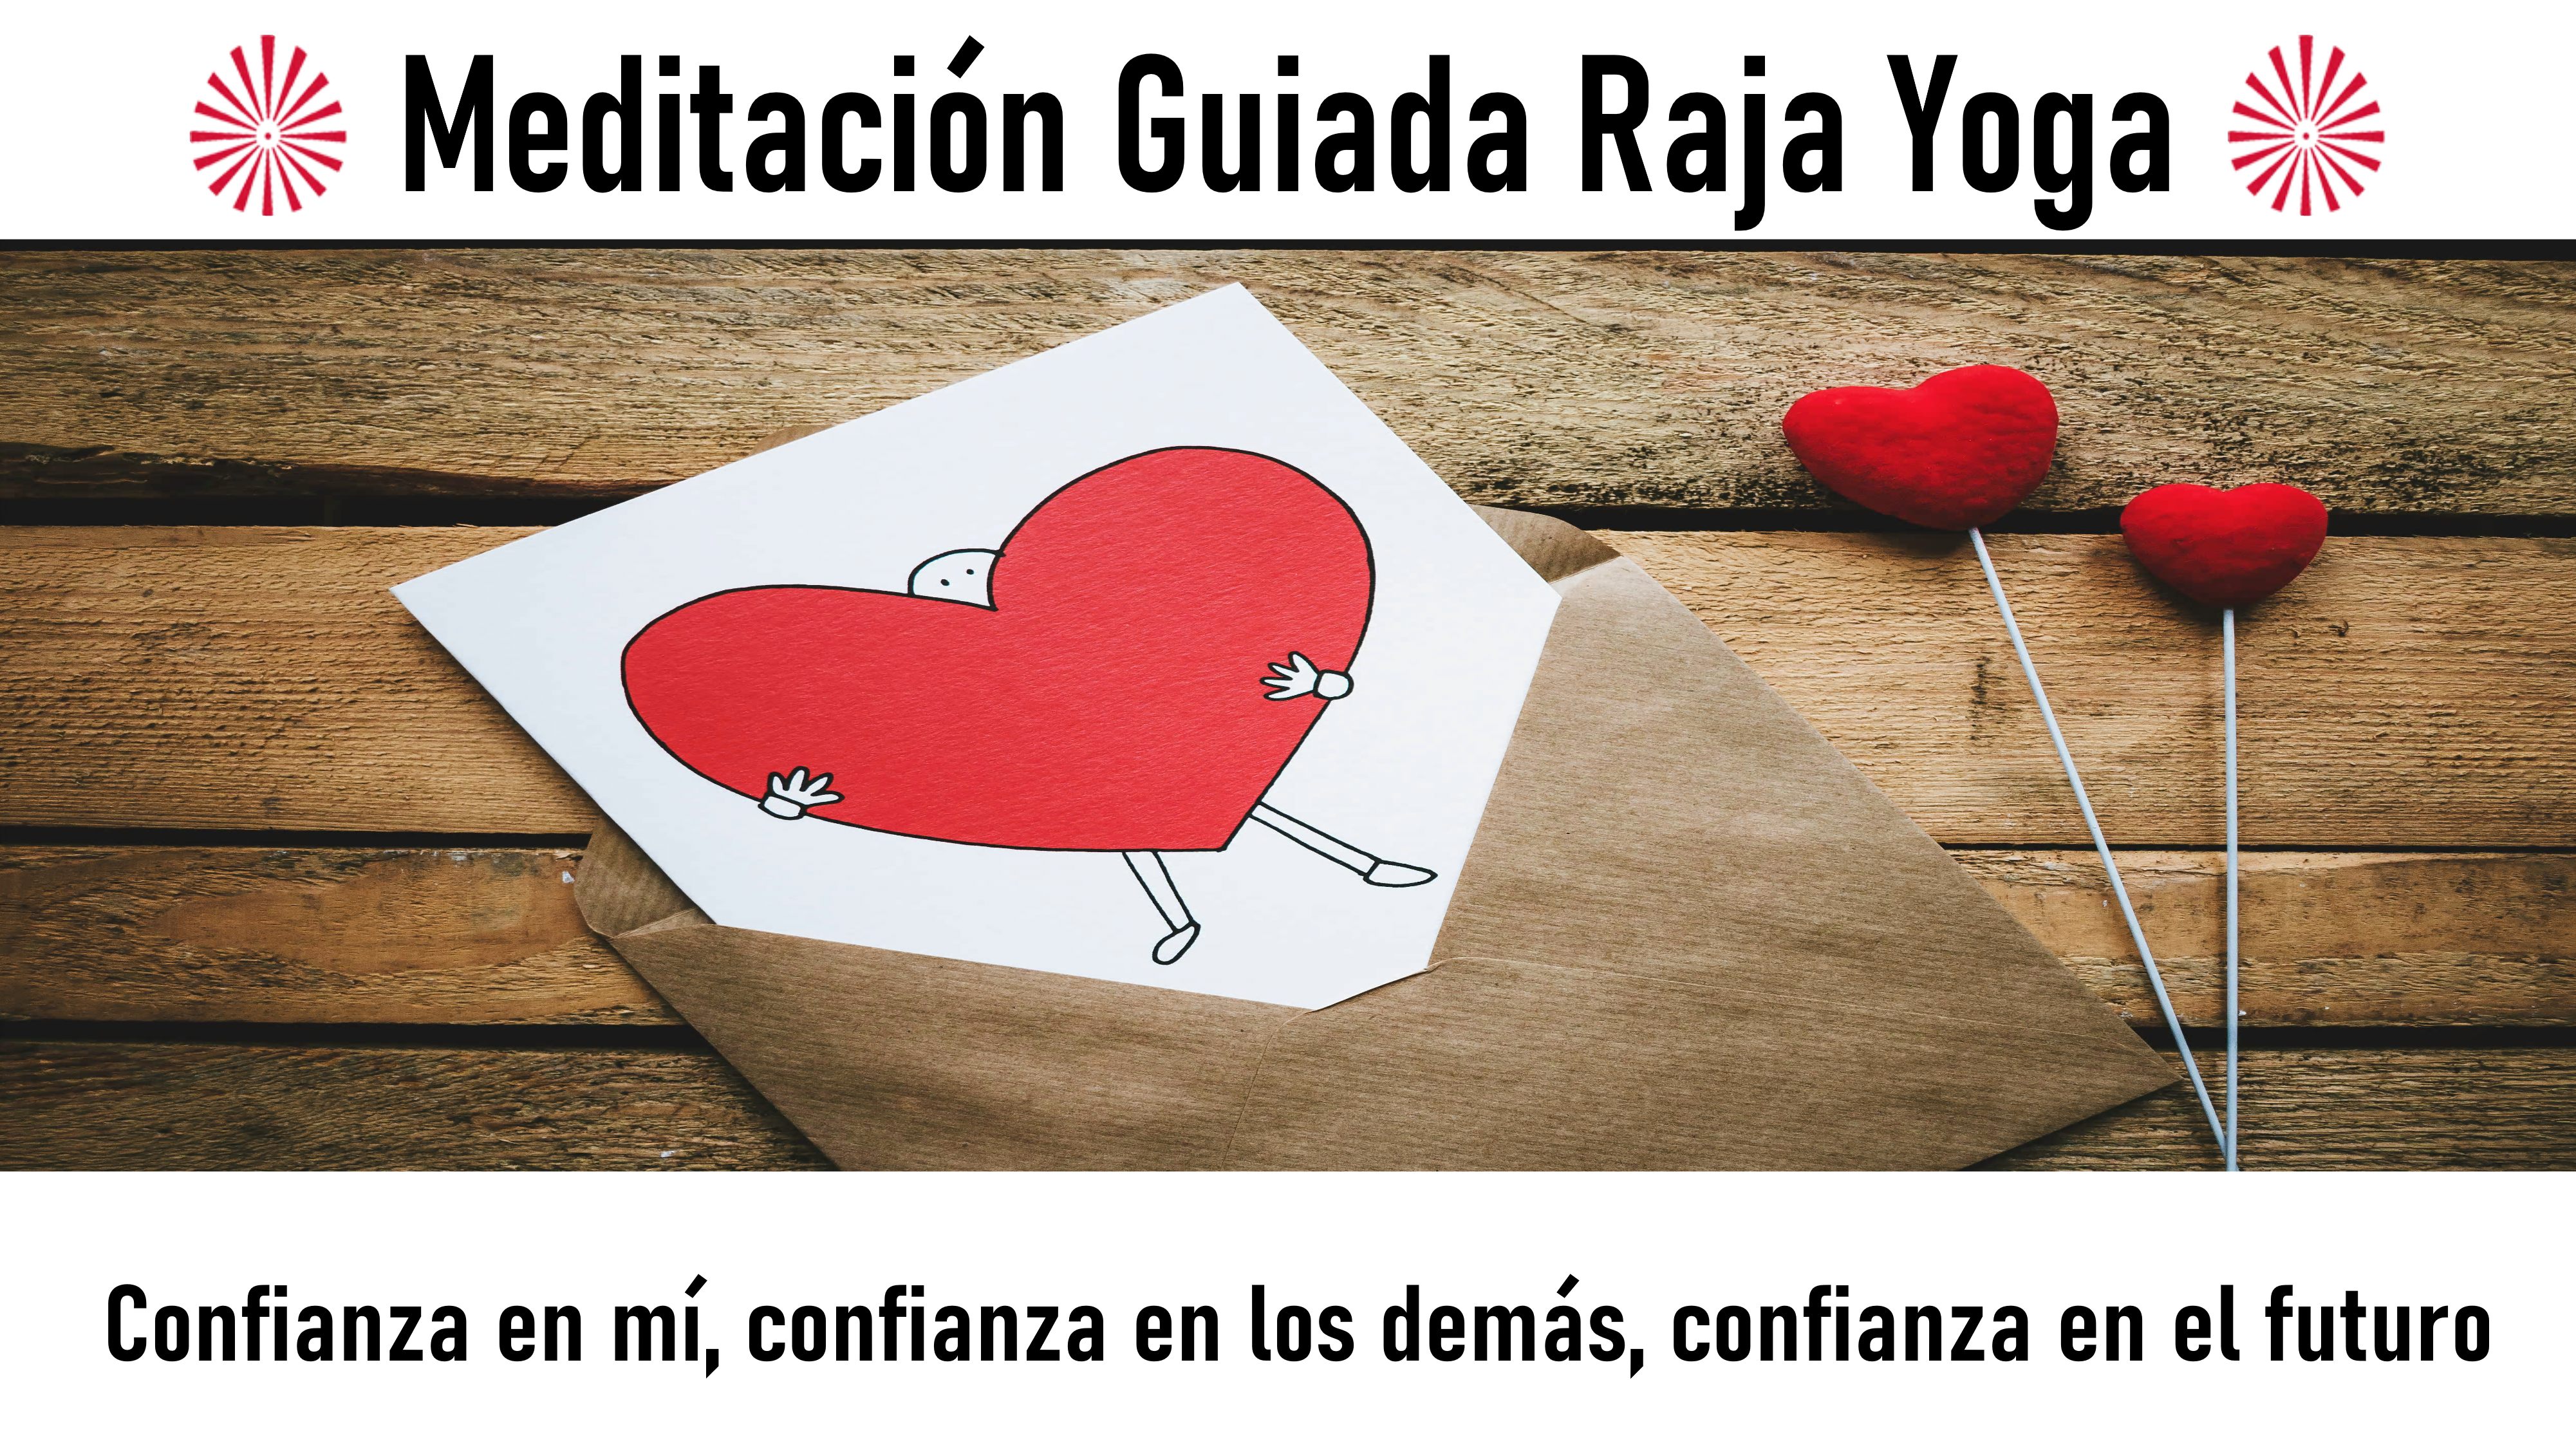 Meditación Raja Yoga: Confianza en mí, confianza en los demás, confianza en el futuro (6 Septiembre) On-line desde Valencia